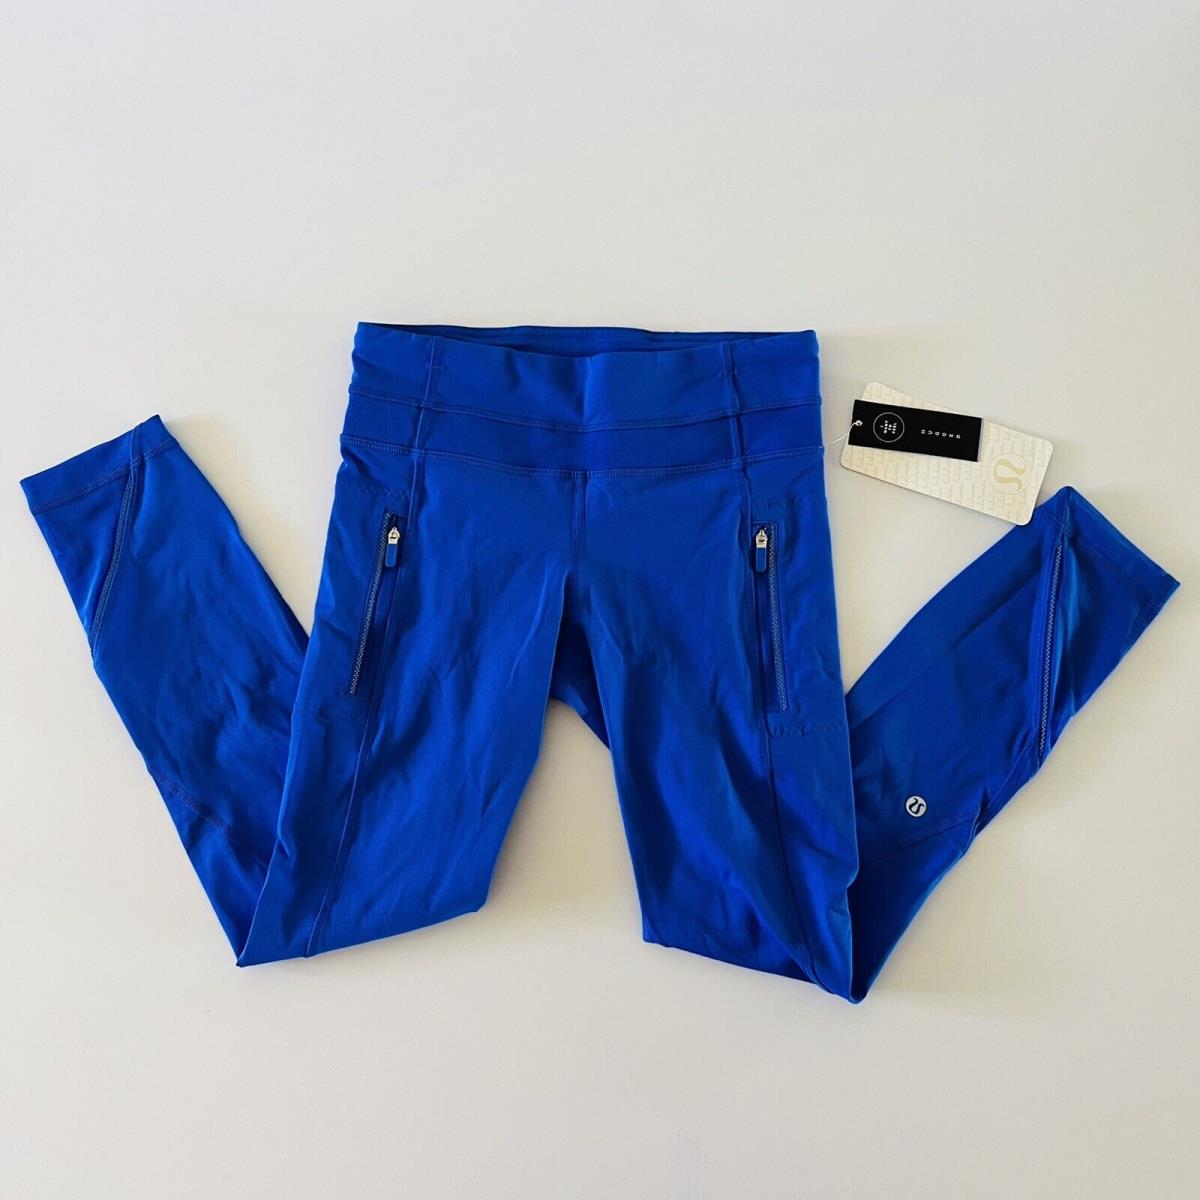 Lululemon clothing  - Blue 2